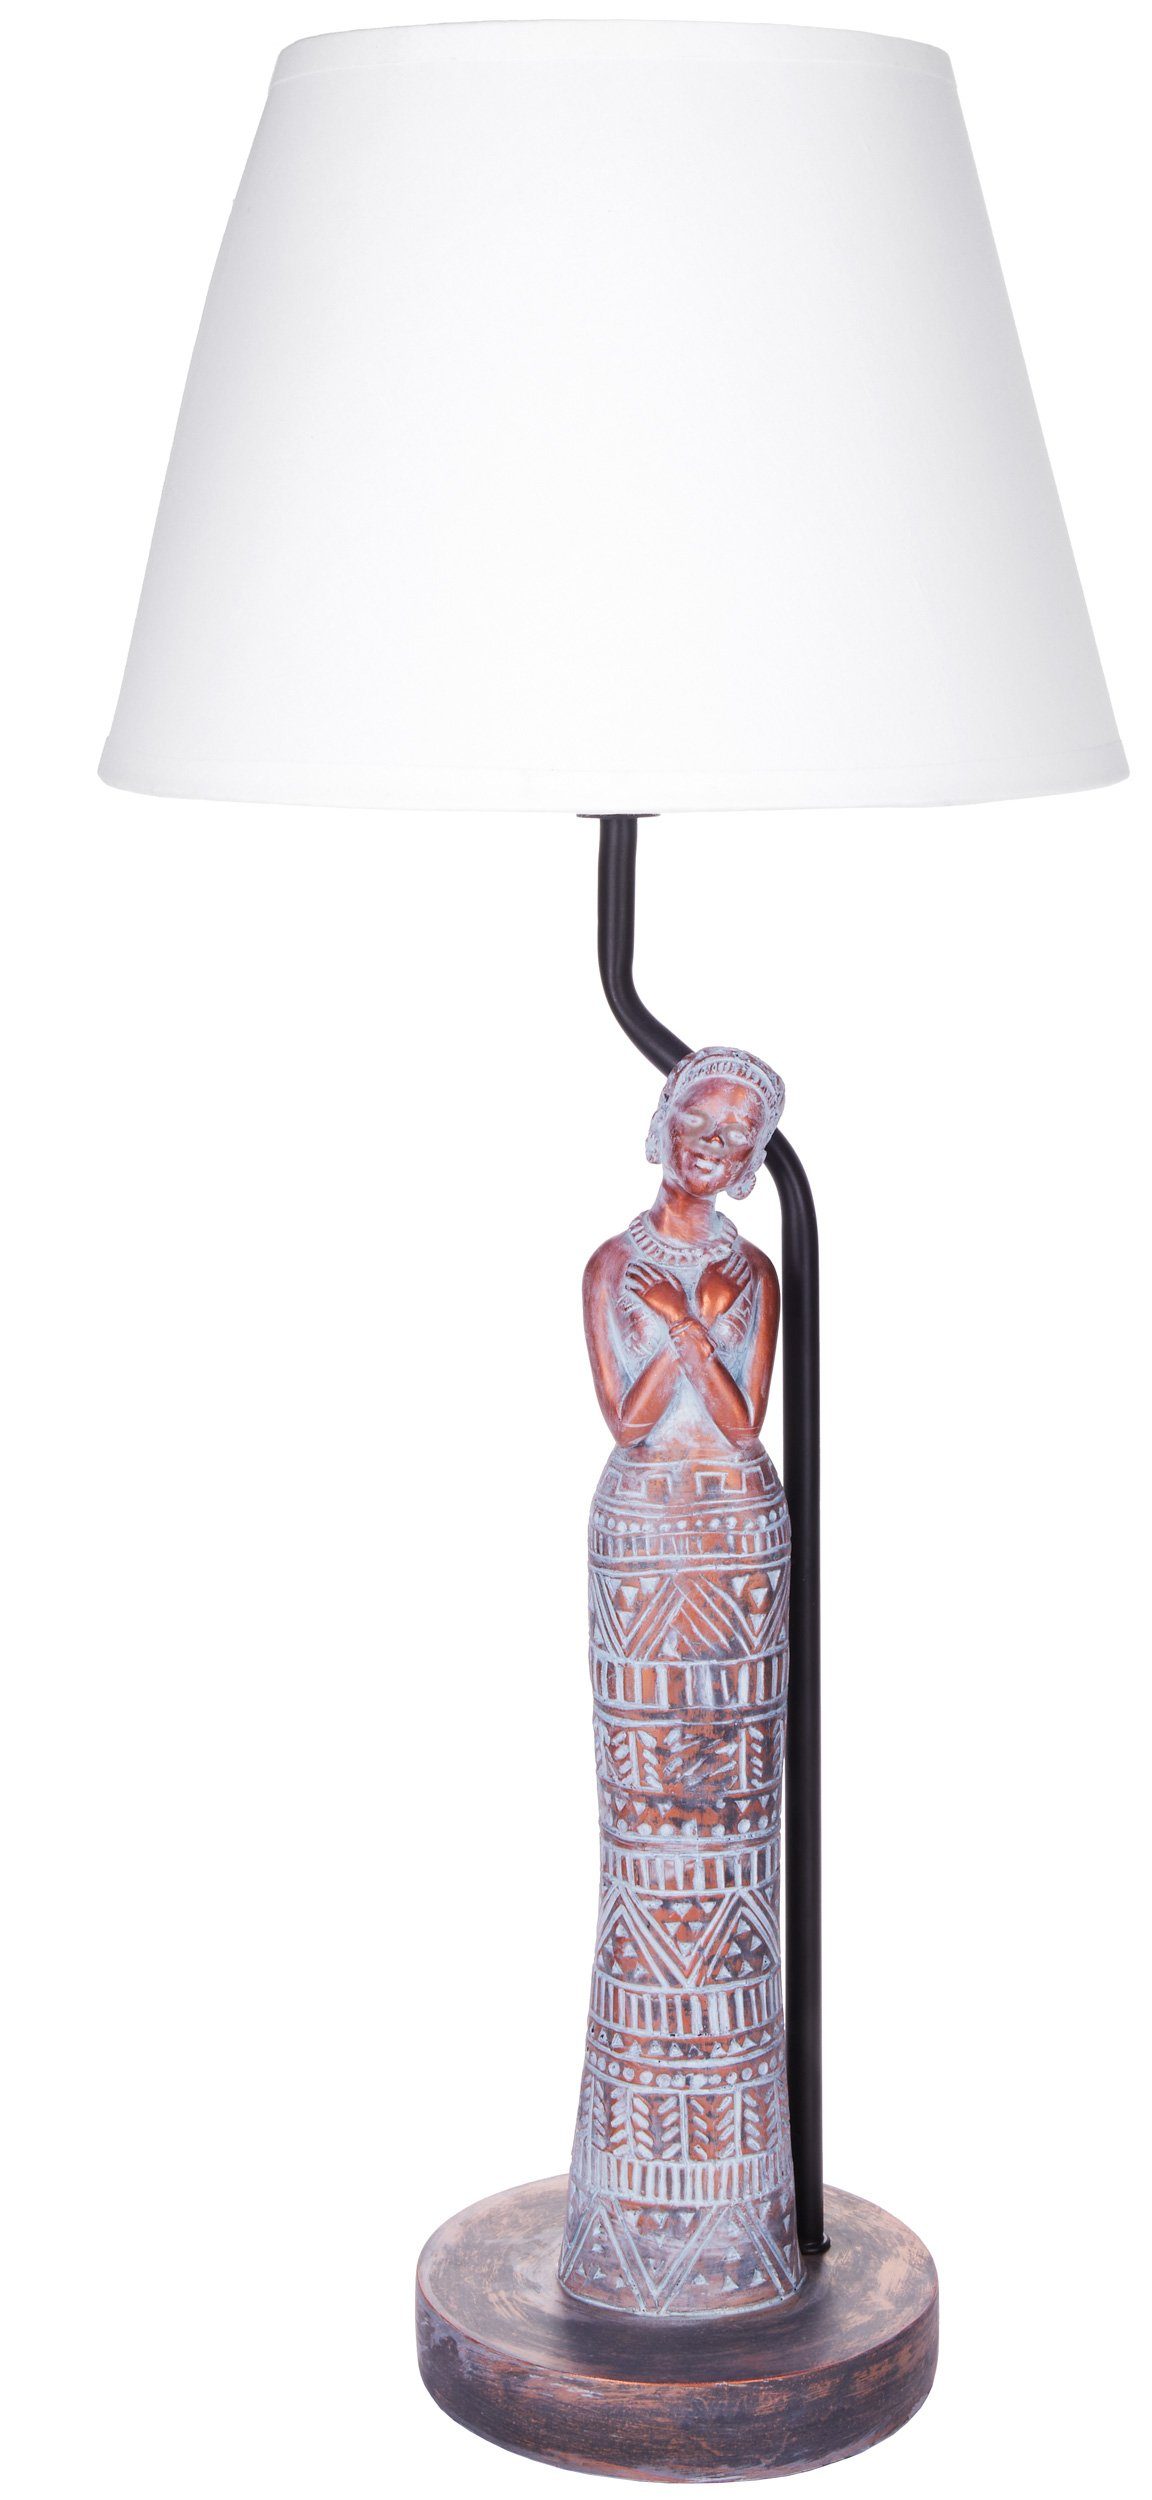 BRUBAKER Nachttischlampe Tischleuchte Afrikanische Frau in Kupfer-Optik, ohne Leuchtmittel, Motiv Lampe mit Keramikfuß, Höhe 58 cm